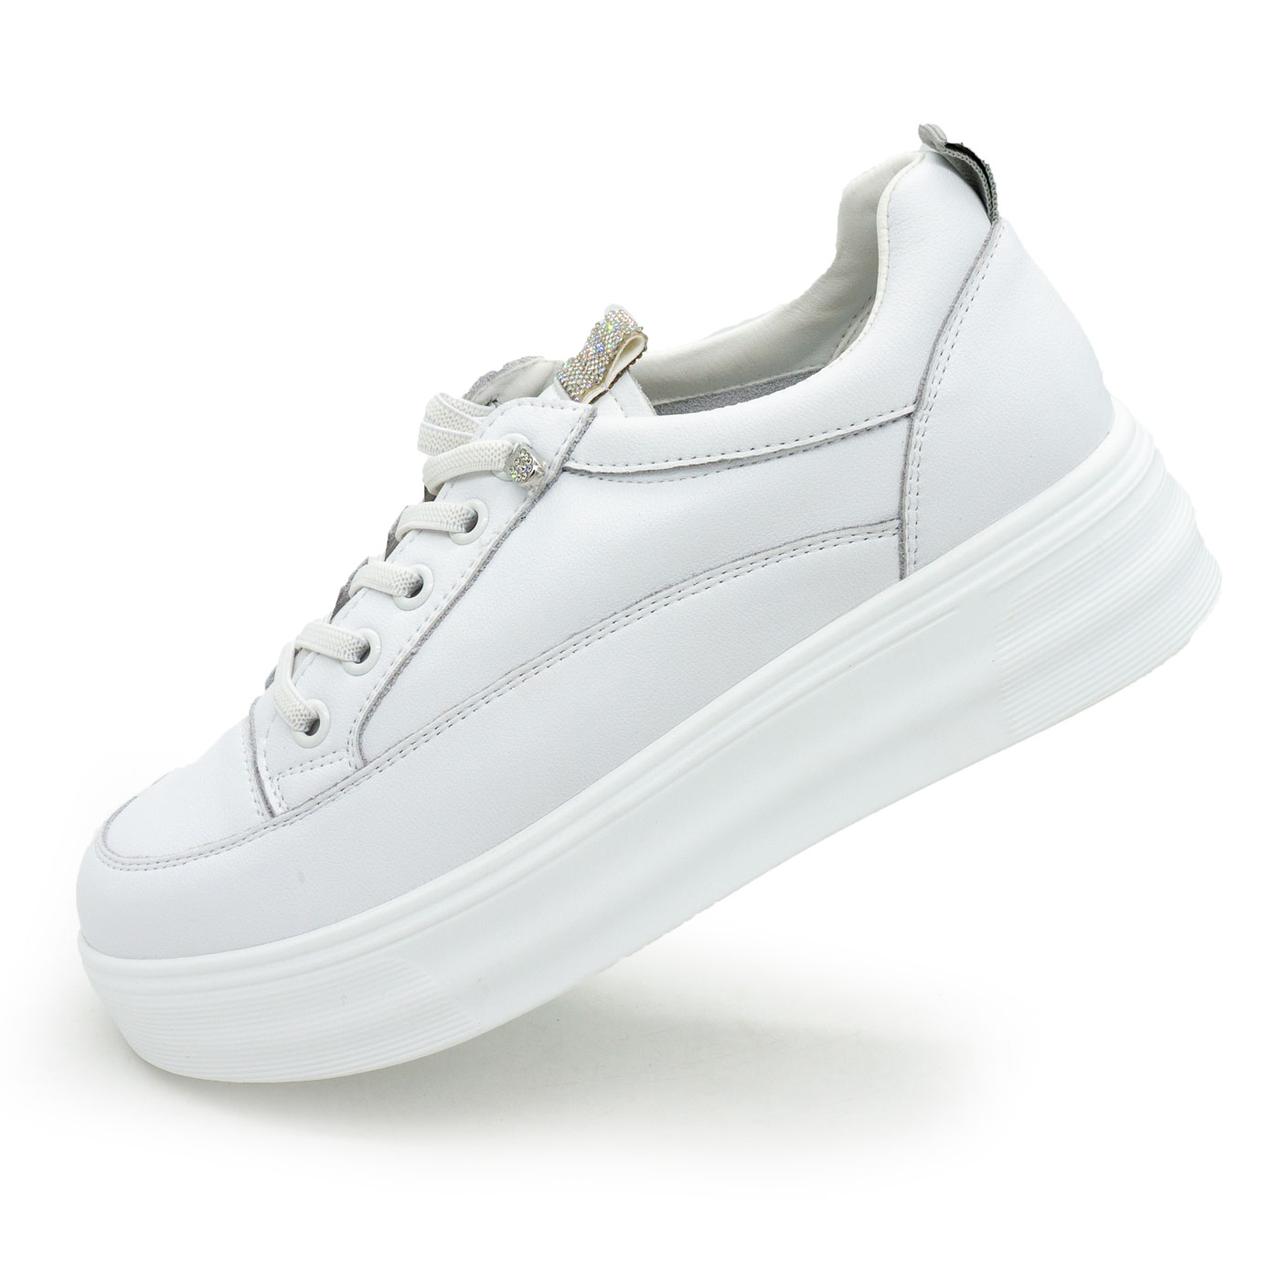 Жіночі білі шкiрянi кросівки Lonza Y95876  36. Розміри в наявності: 36, 37.